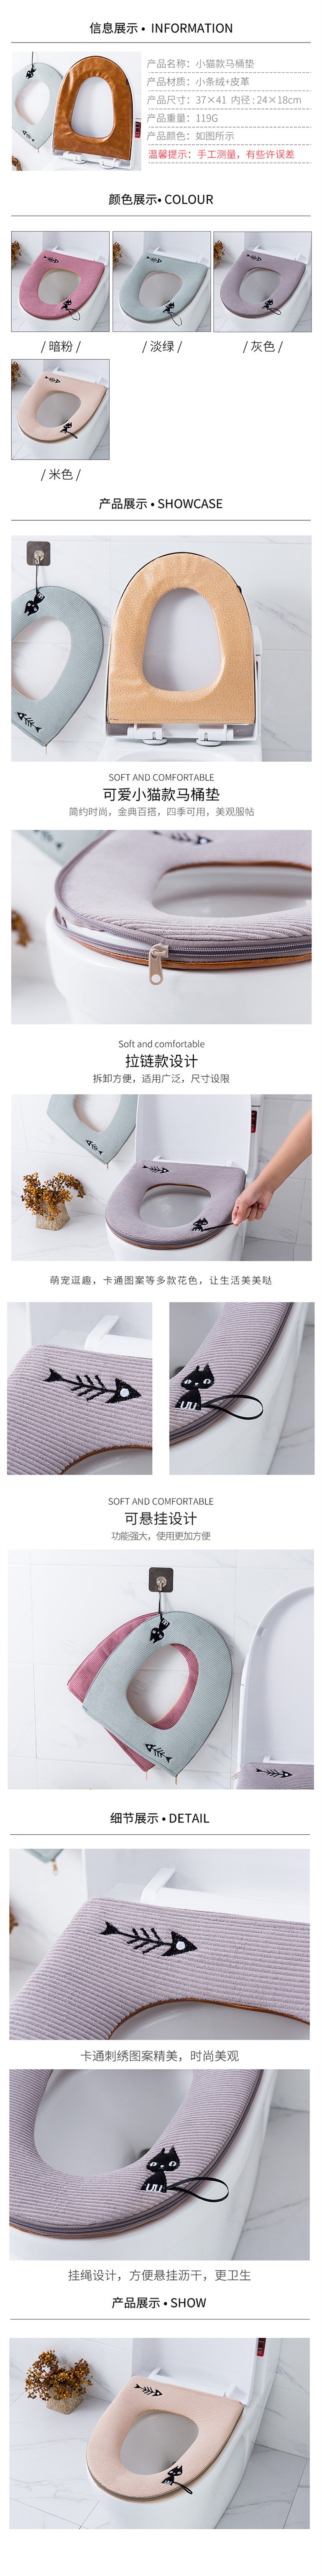 Cute Cat Toilet seat cushion 1PCS